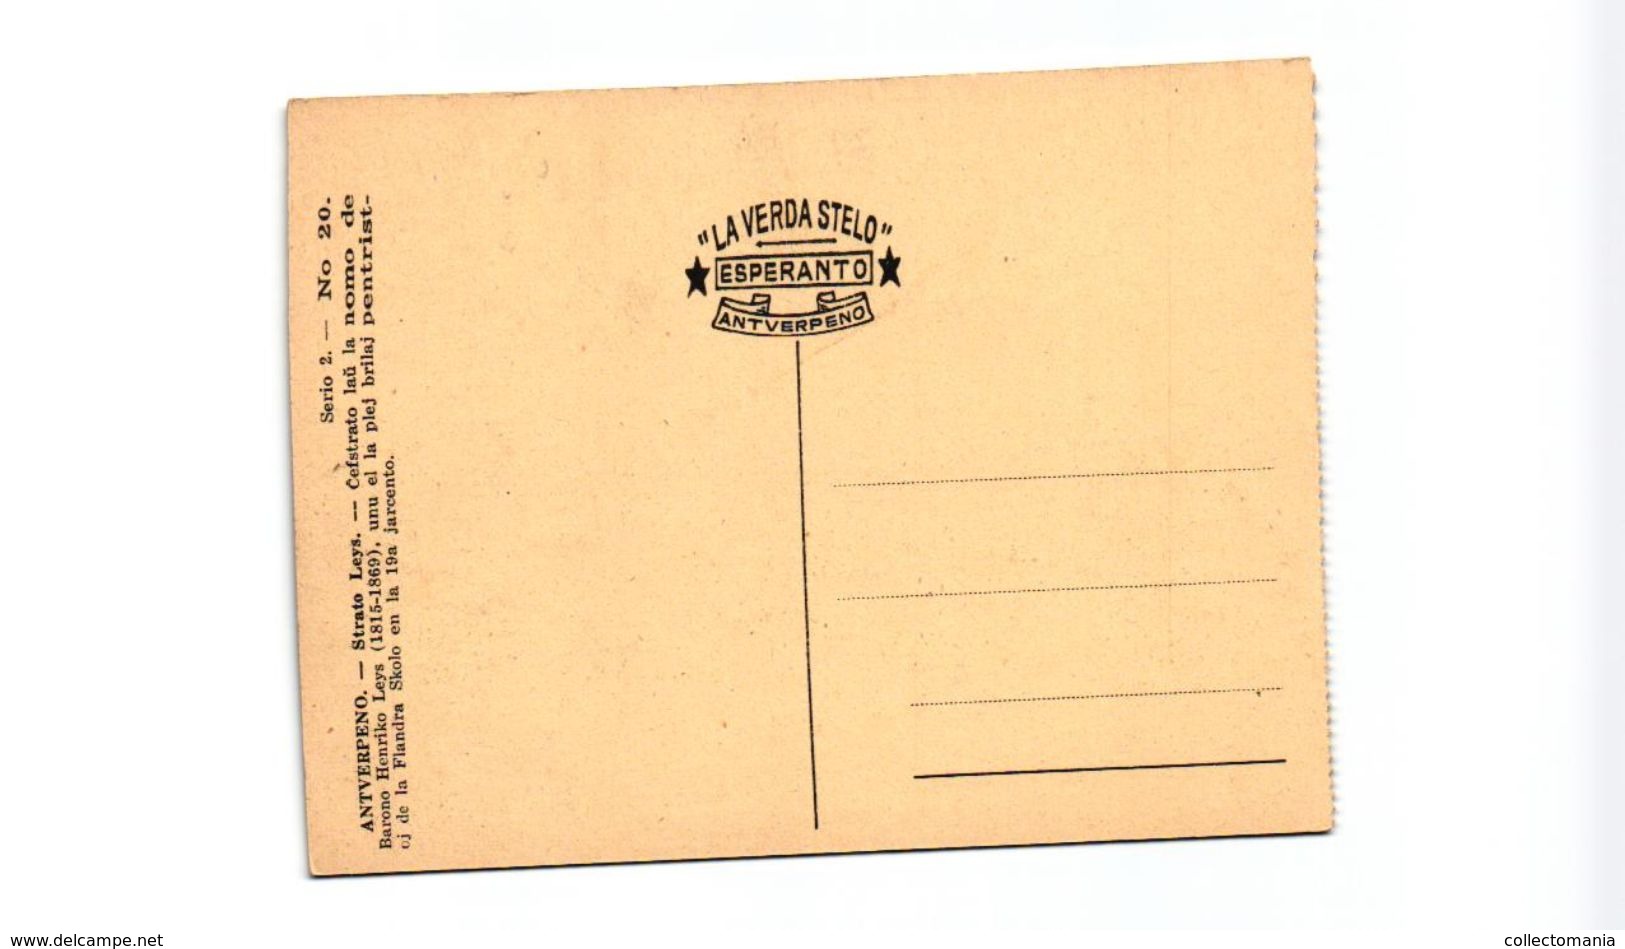 9 oude postkaarten  Esperanto kunsttaal , nieuwjaarswensen, nova Jaro  Zamenhof 1859-1917, Antwerpen sluitzegels